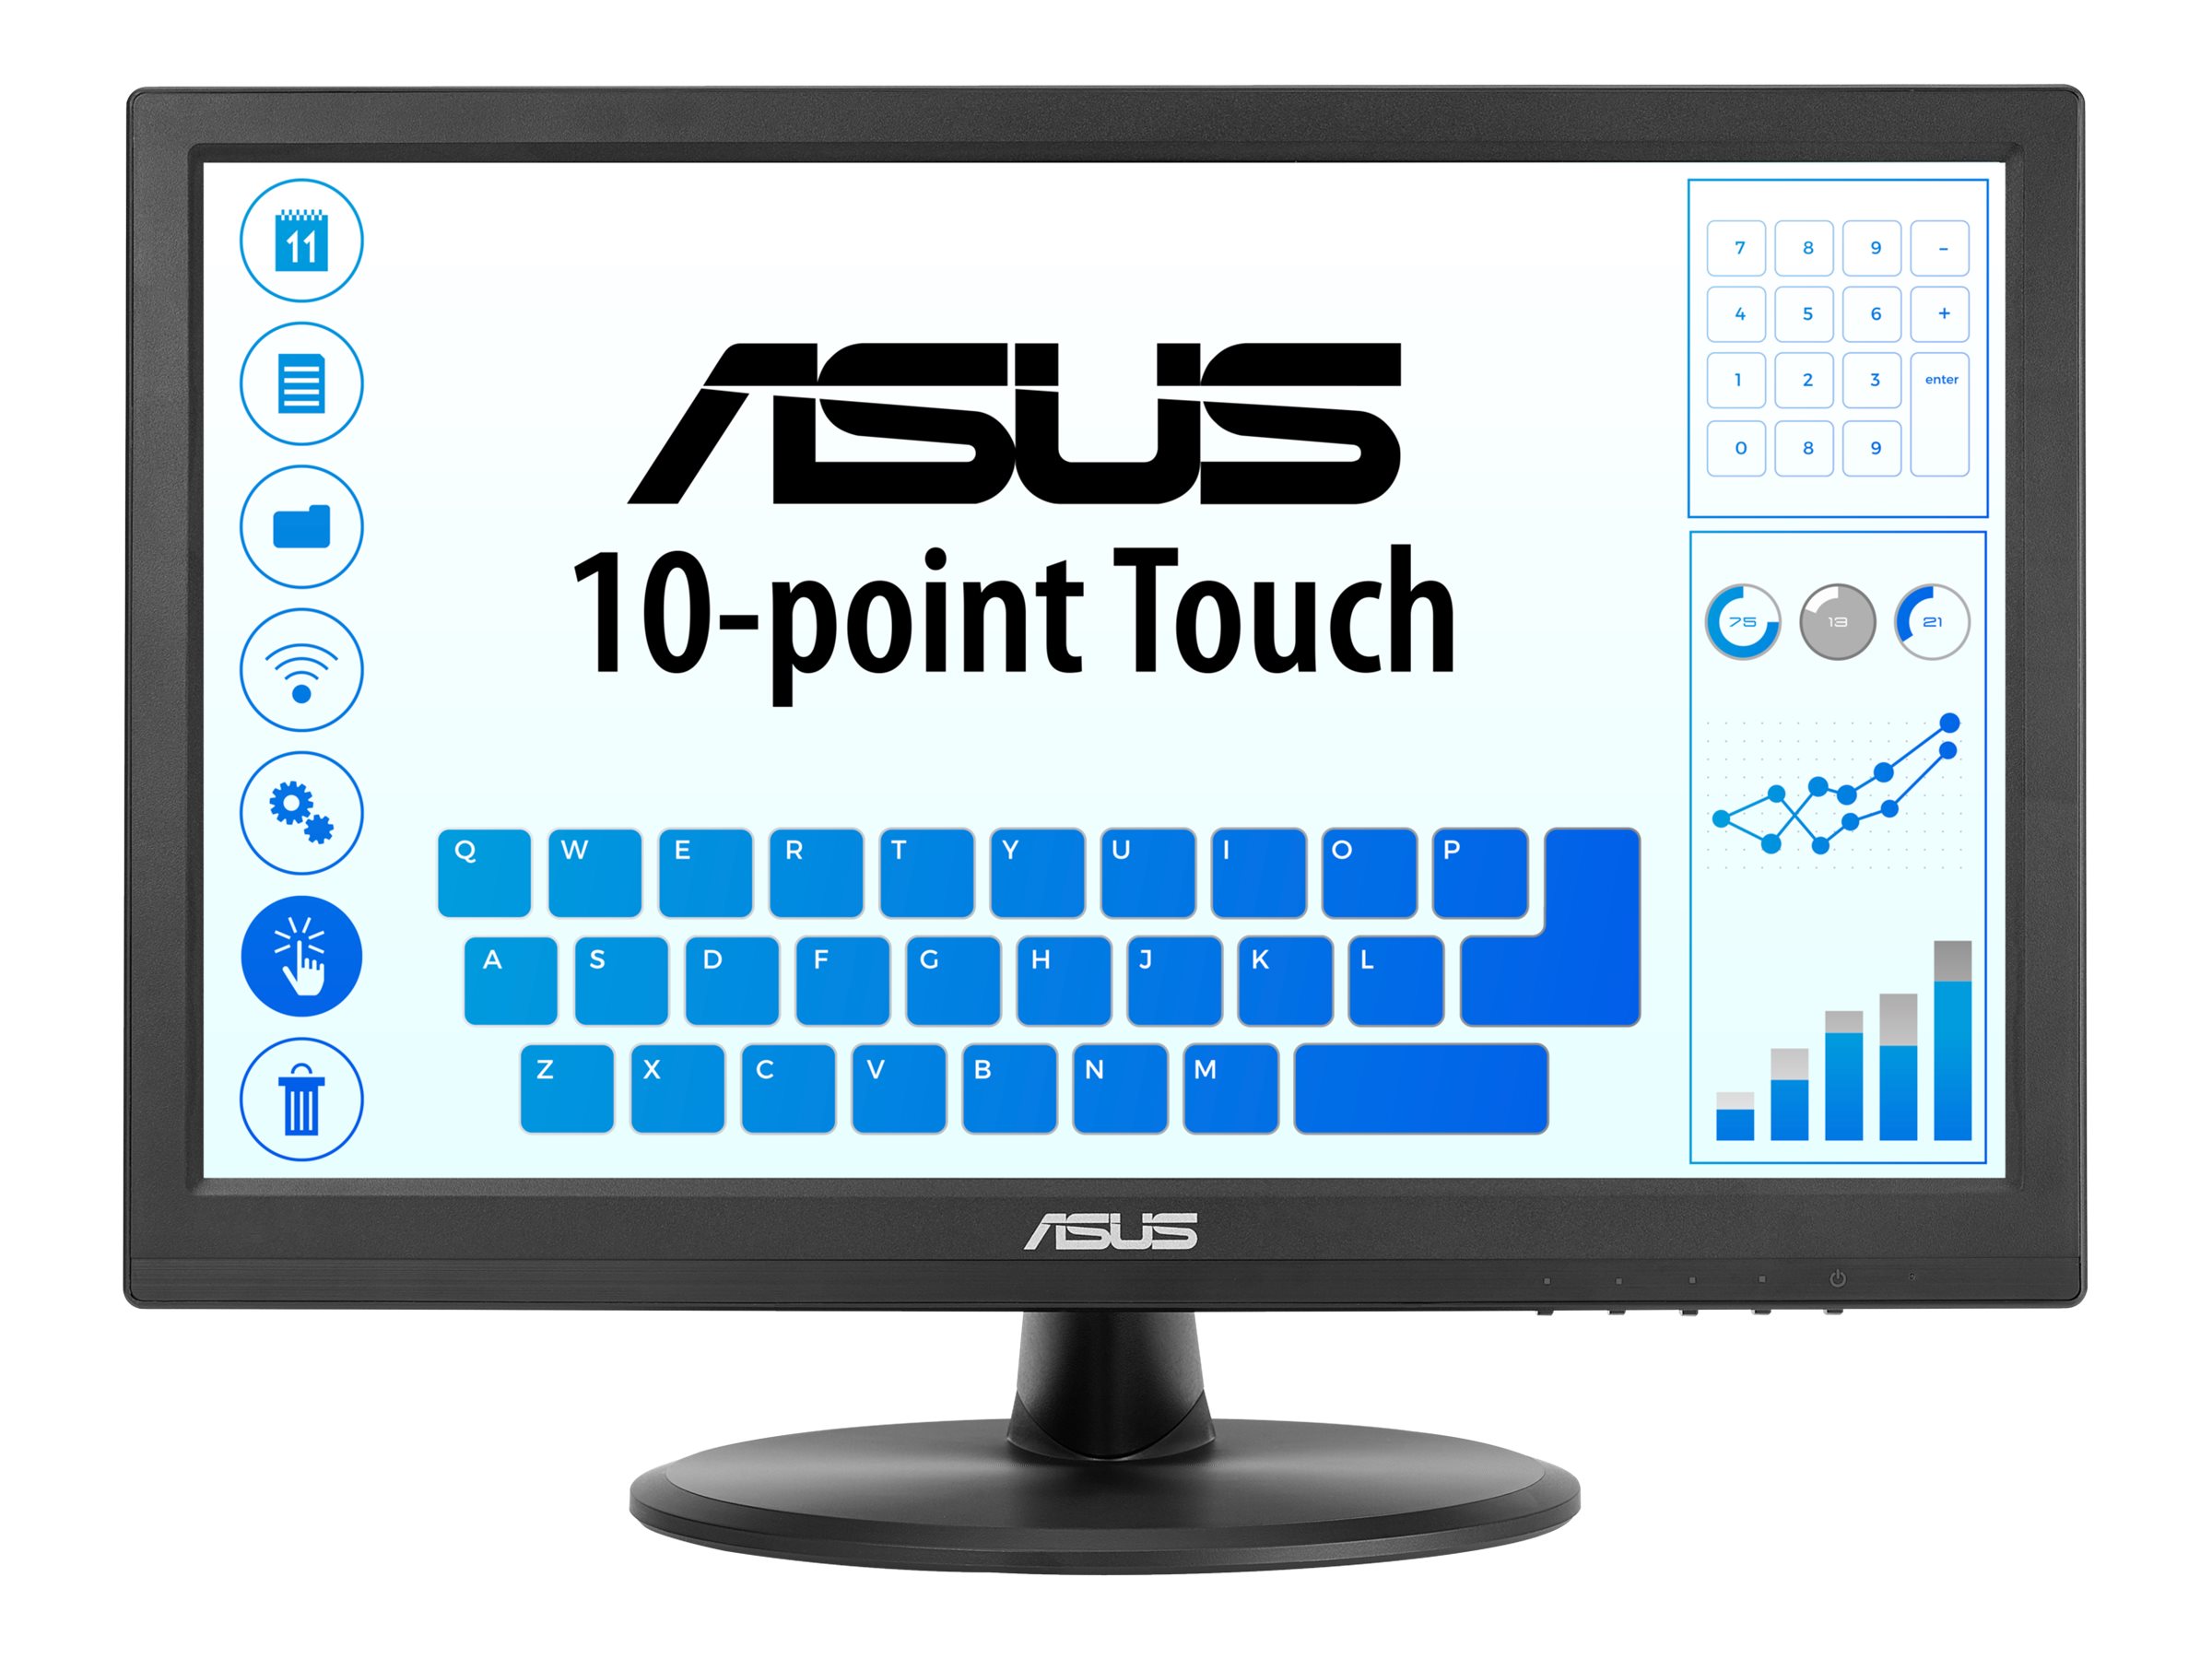 ASUS VT168HR - Écran LED - 15.6" - écran tactile - 1366 x 768 WXGA @ 60 Hz - TN - 220 cd/m² - 400:1 - 5 ms - HDMI, VGA - 90LM02G1-B04170 - Écrans d'ordinateur